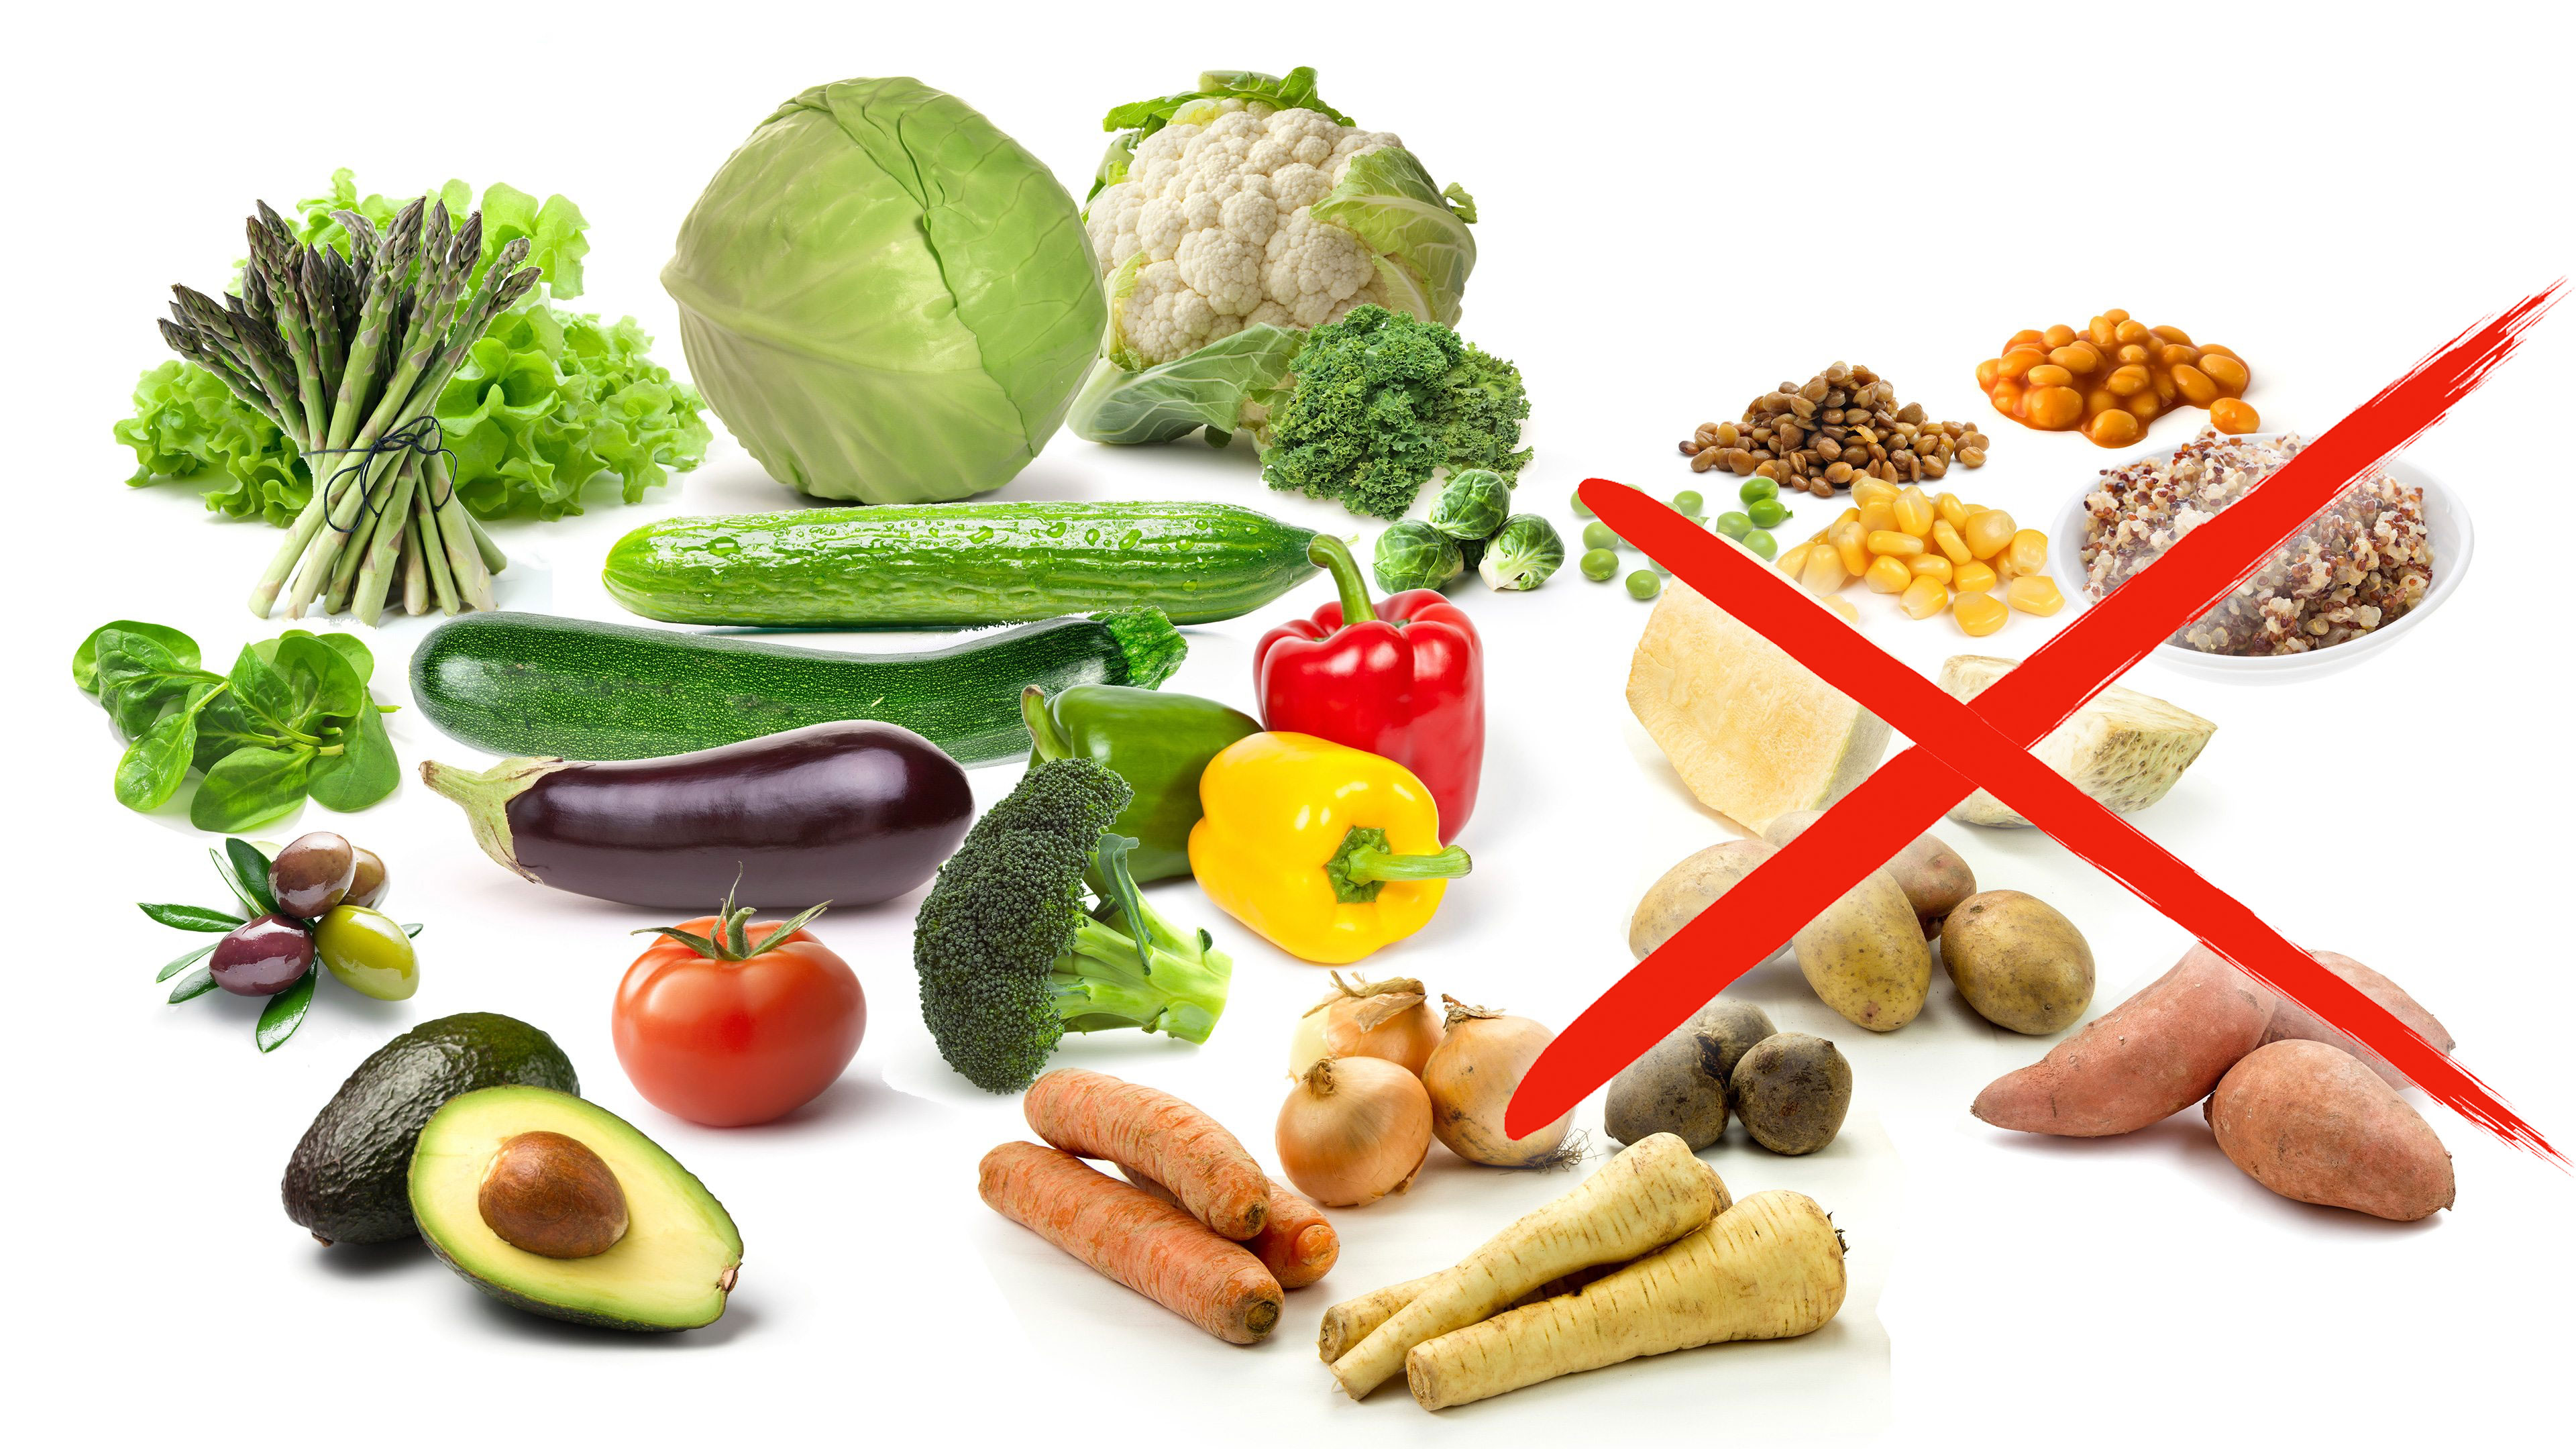 Dieta celiacos alimentos prohibidos